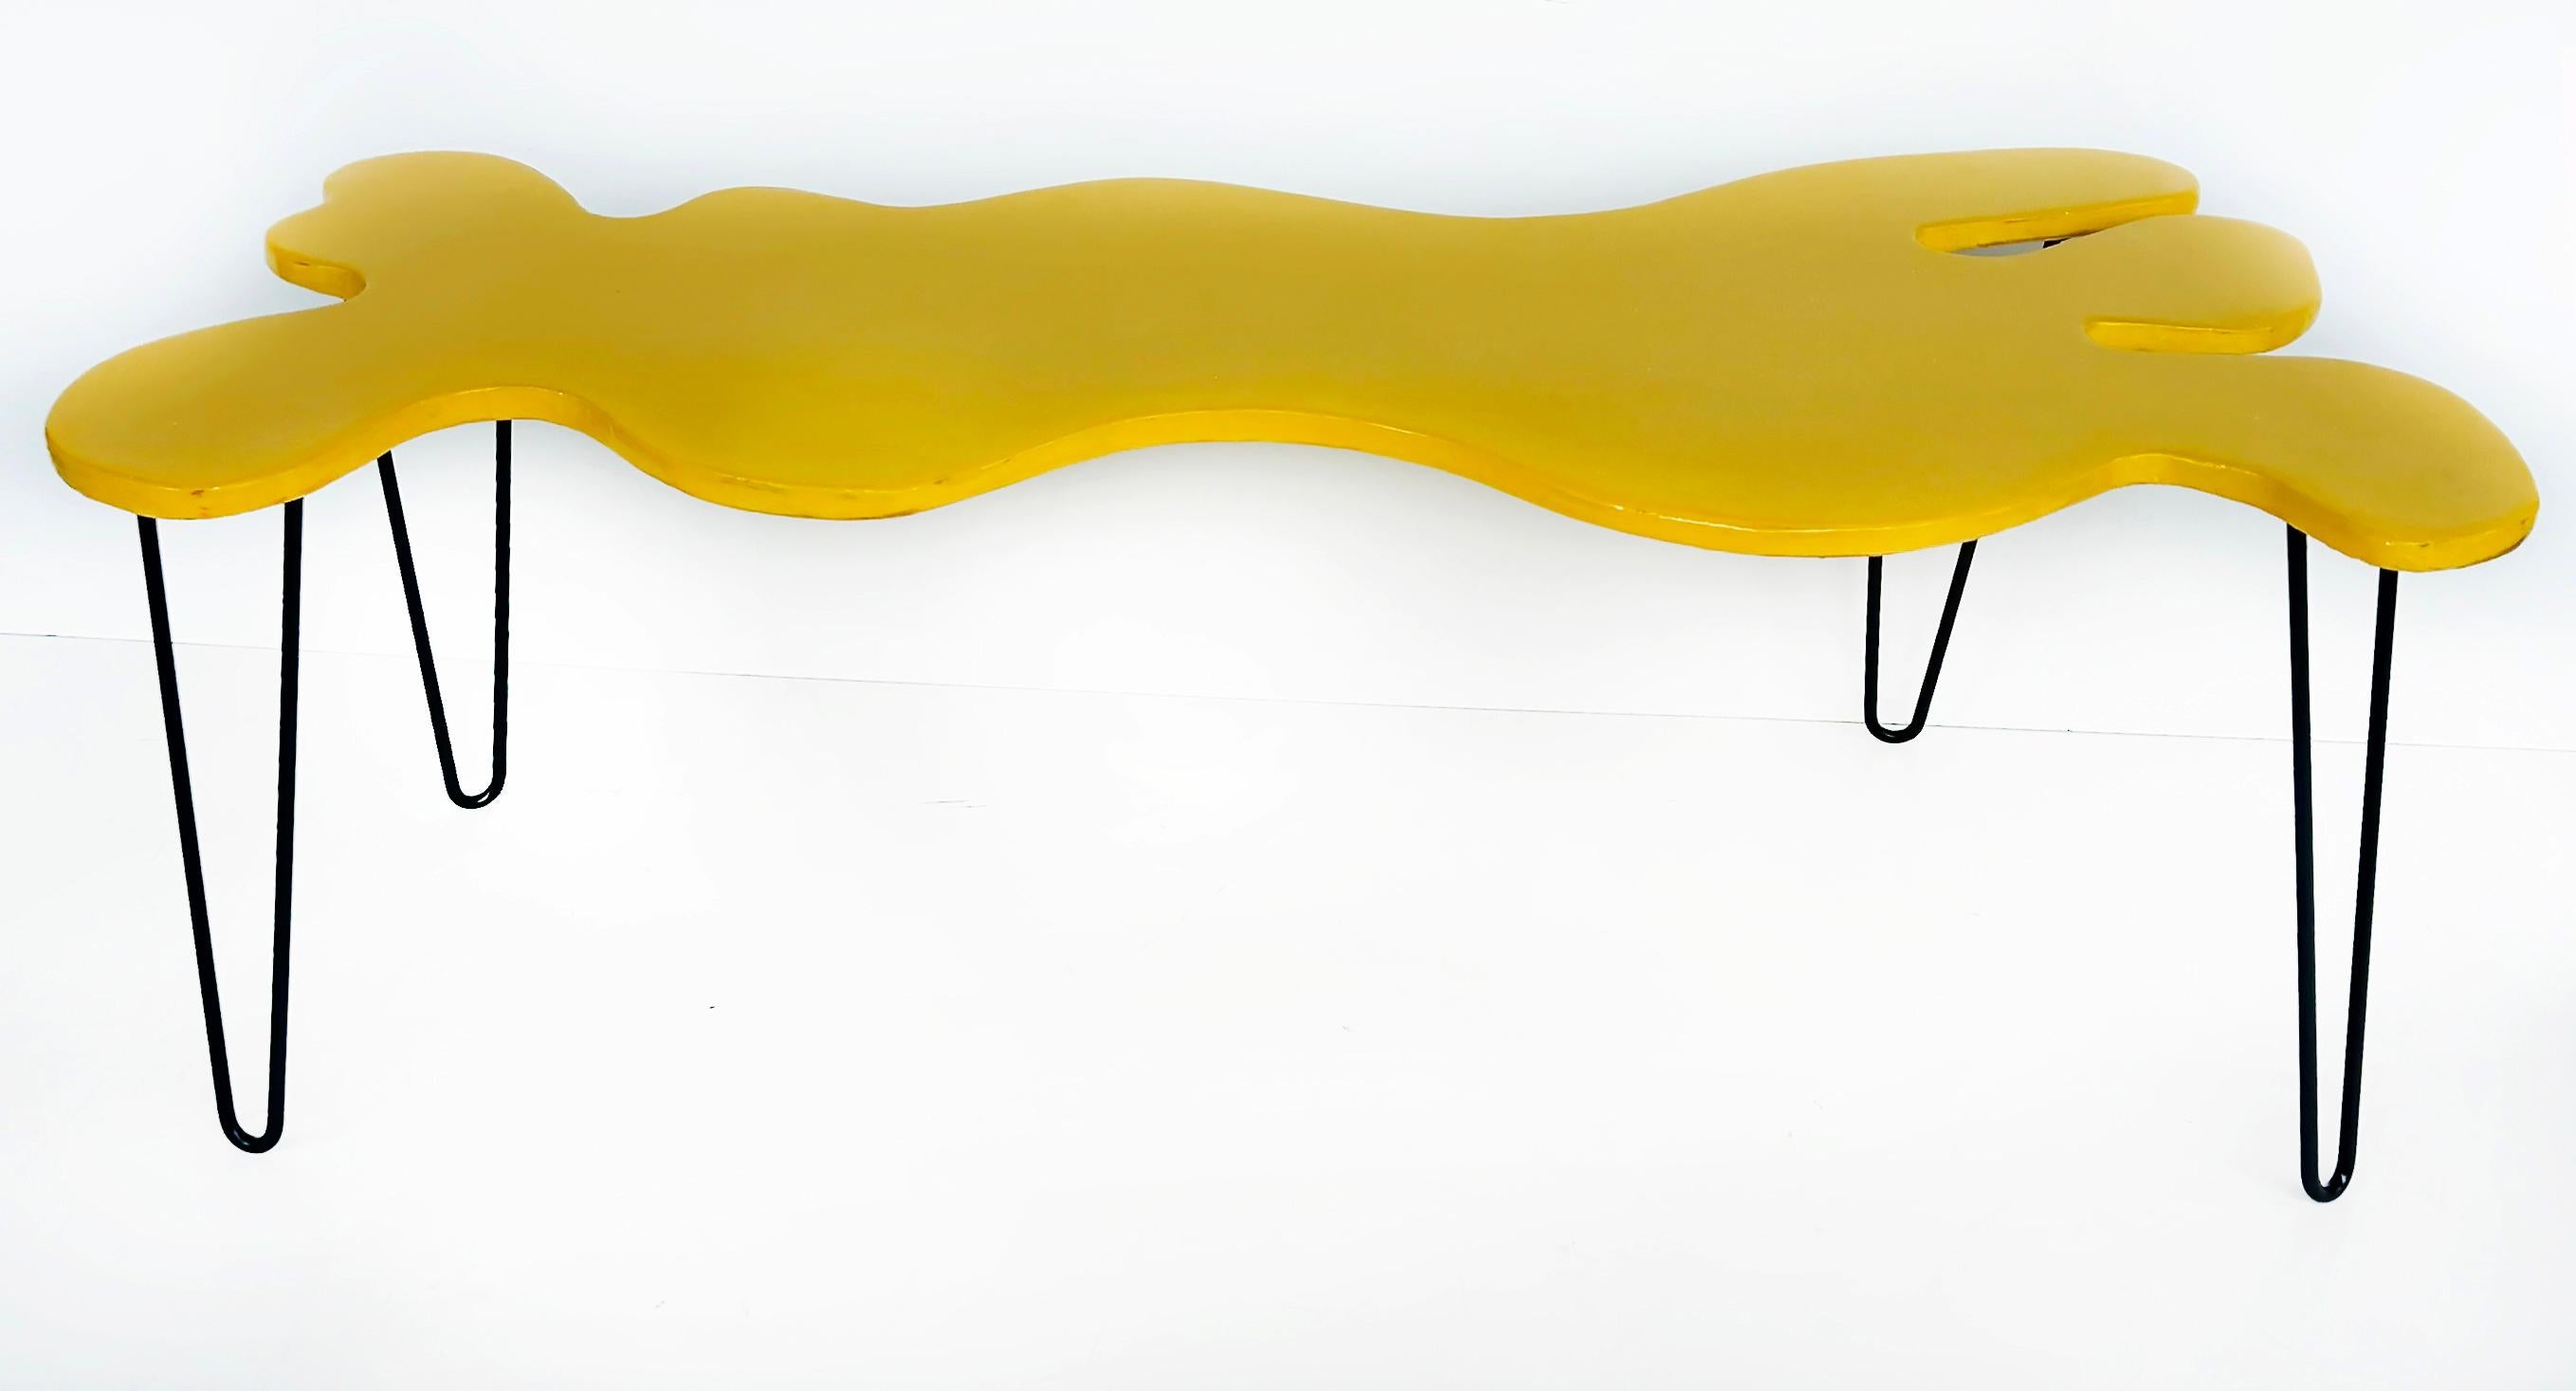 Bohdan Andreas Funktionaler Wandtisch aus abstrakter Kunst/Kaffee in handbemalter Epoxidharz 

Zum Verkauf angeboten wird eine funktionale Kunst Epoxidharz handbemalt Couchtisch / Wandkunst nach Keith Haring's 